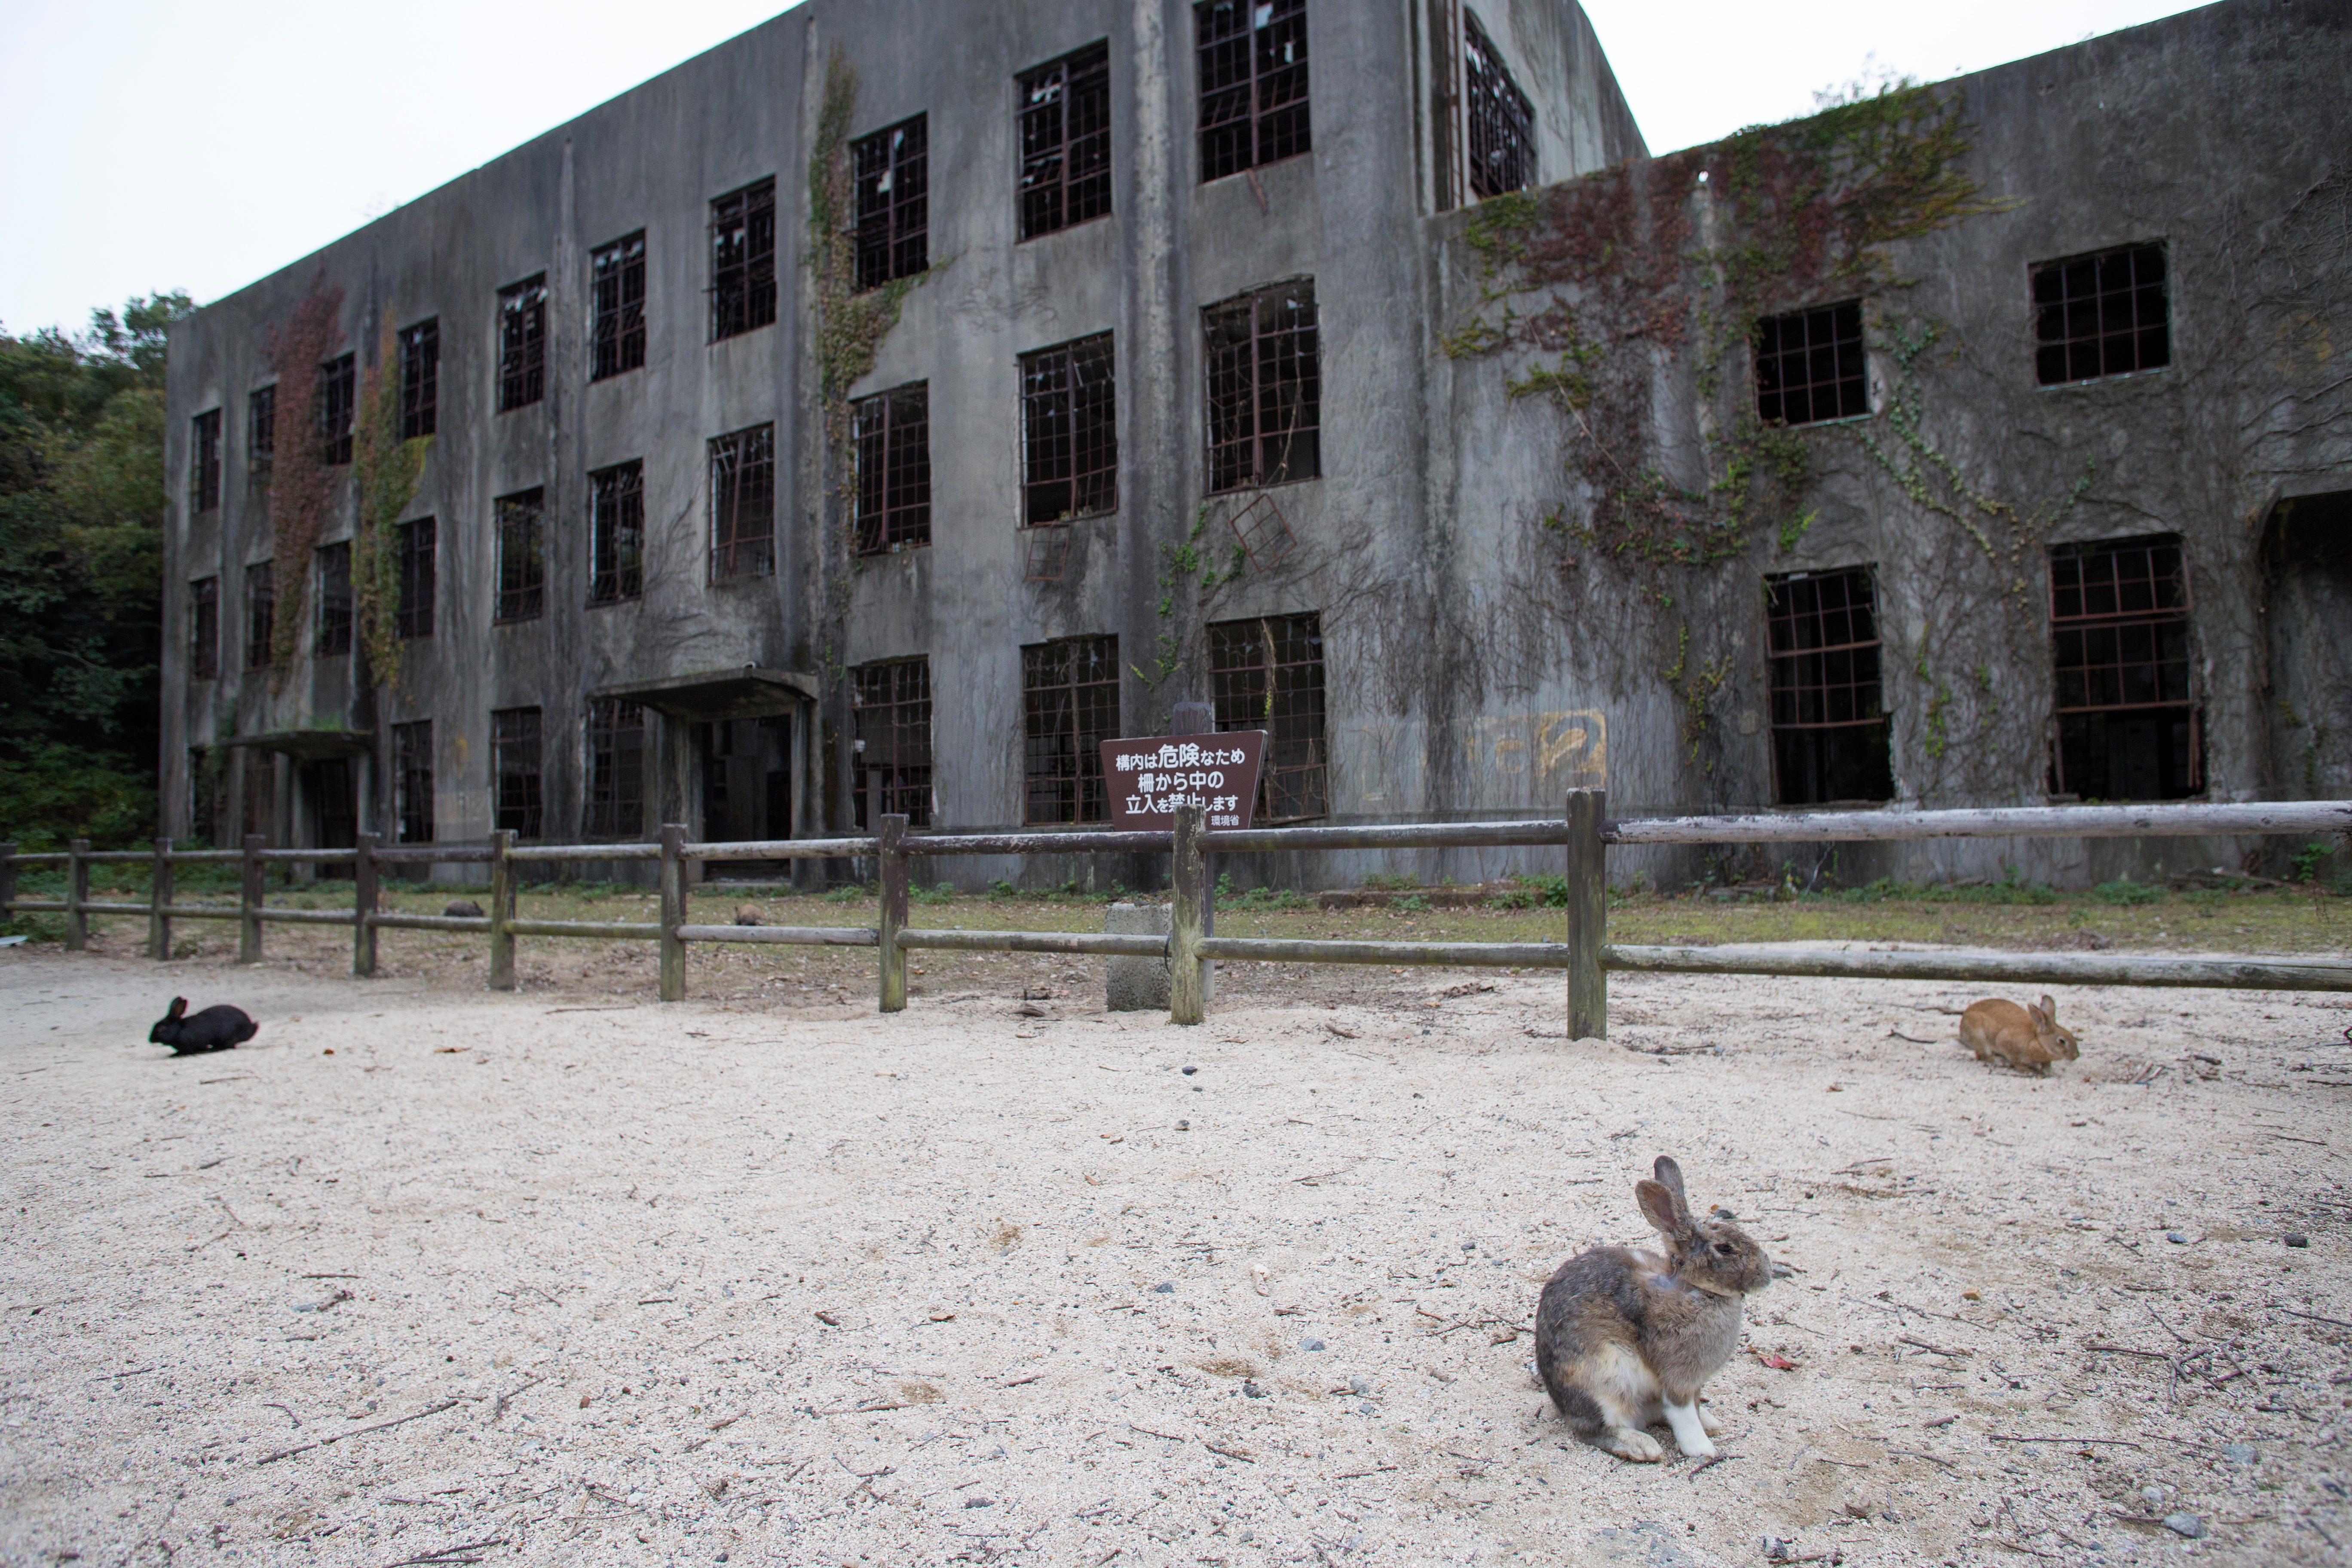 Während des Zweiten Weltkriegs spielte die Insel eine Schlüsselrolle, da dort eine Giftgasfabrik untergebracht war